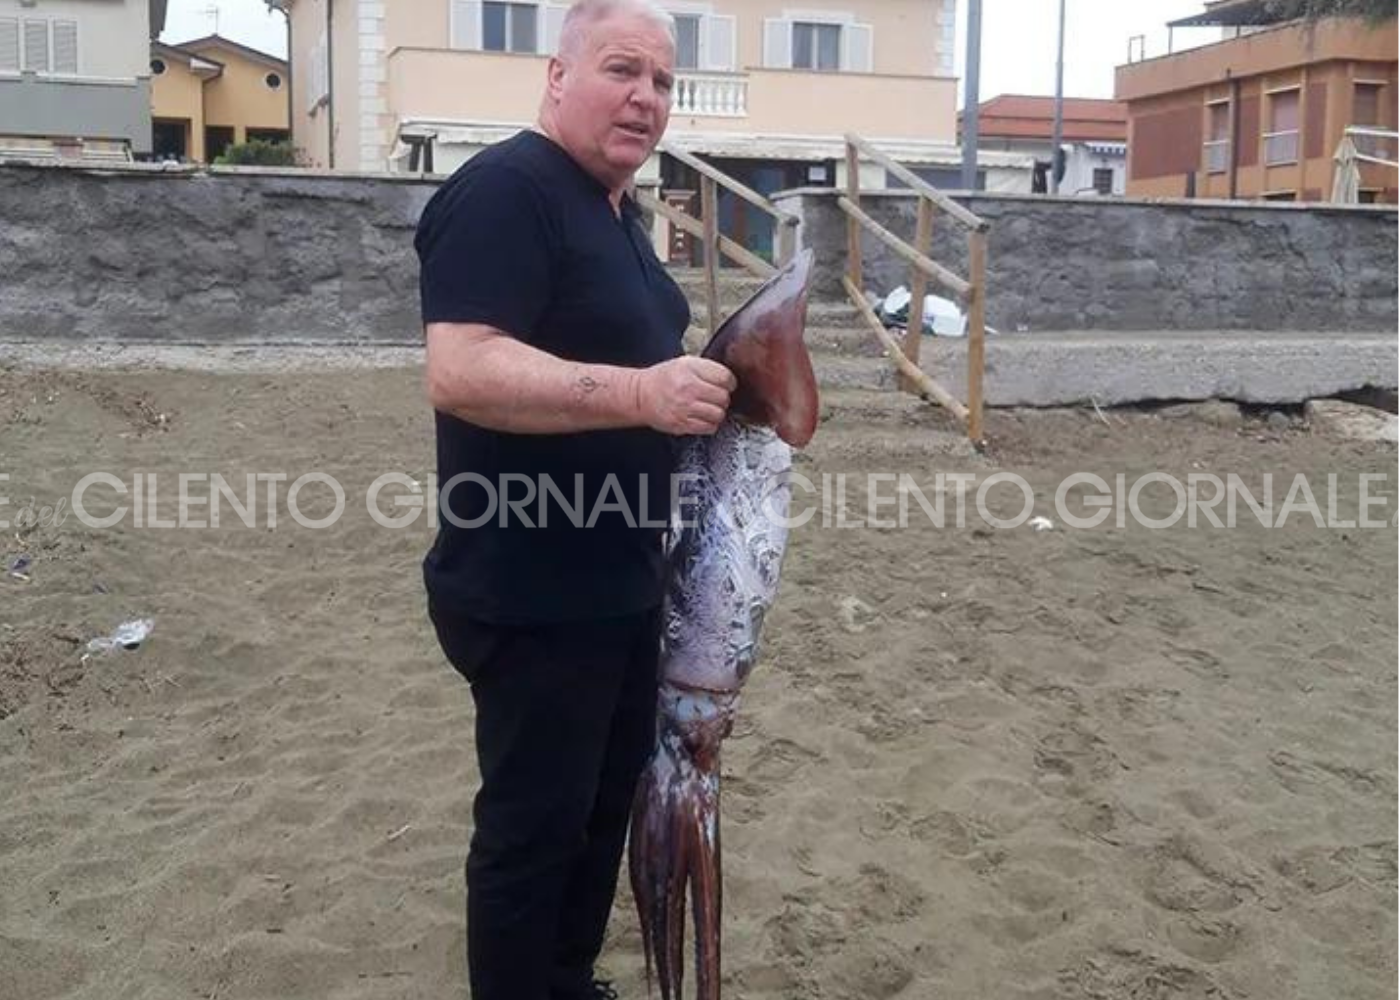 Totano gigante pescato a mani nude sul lungomare di Casal Velino Marina